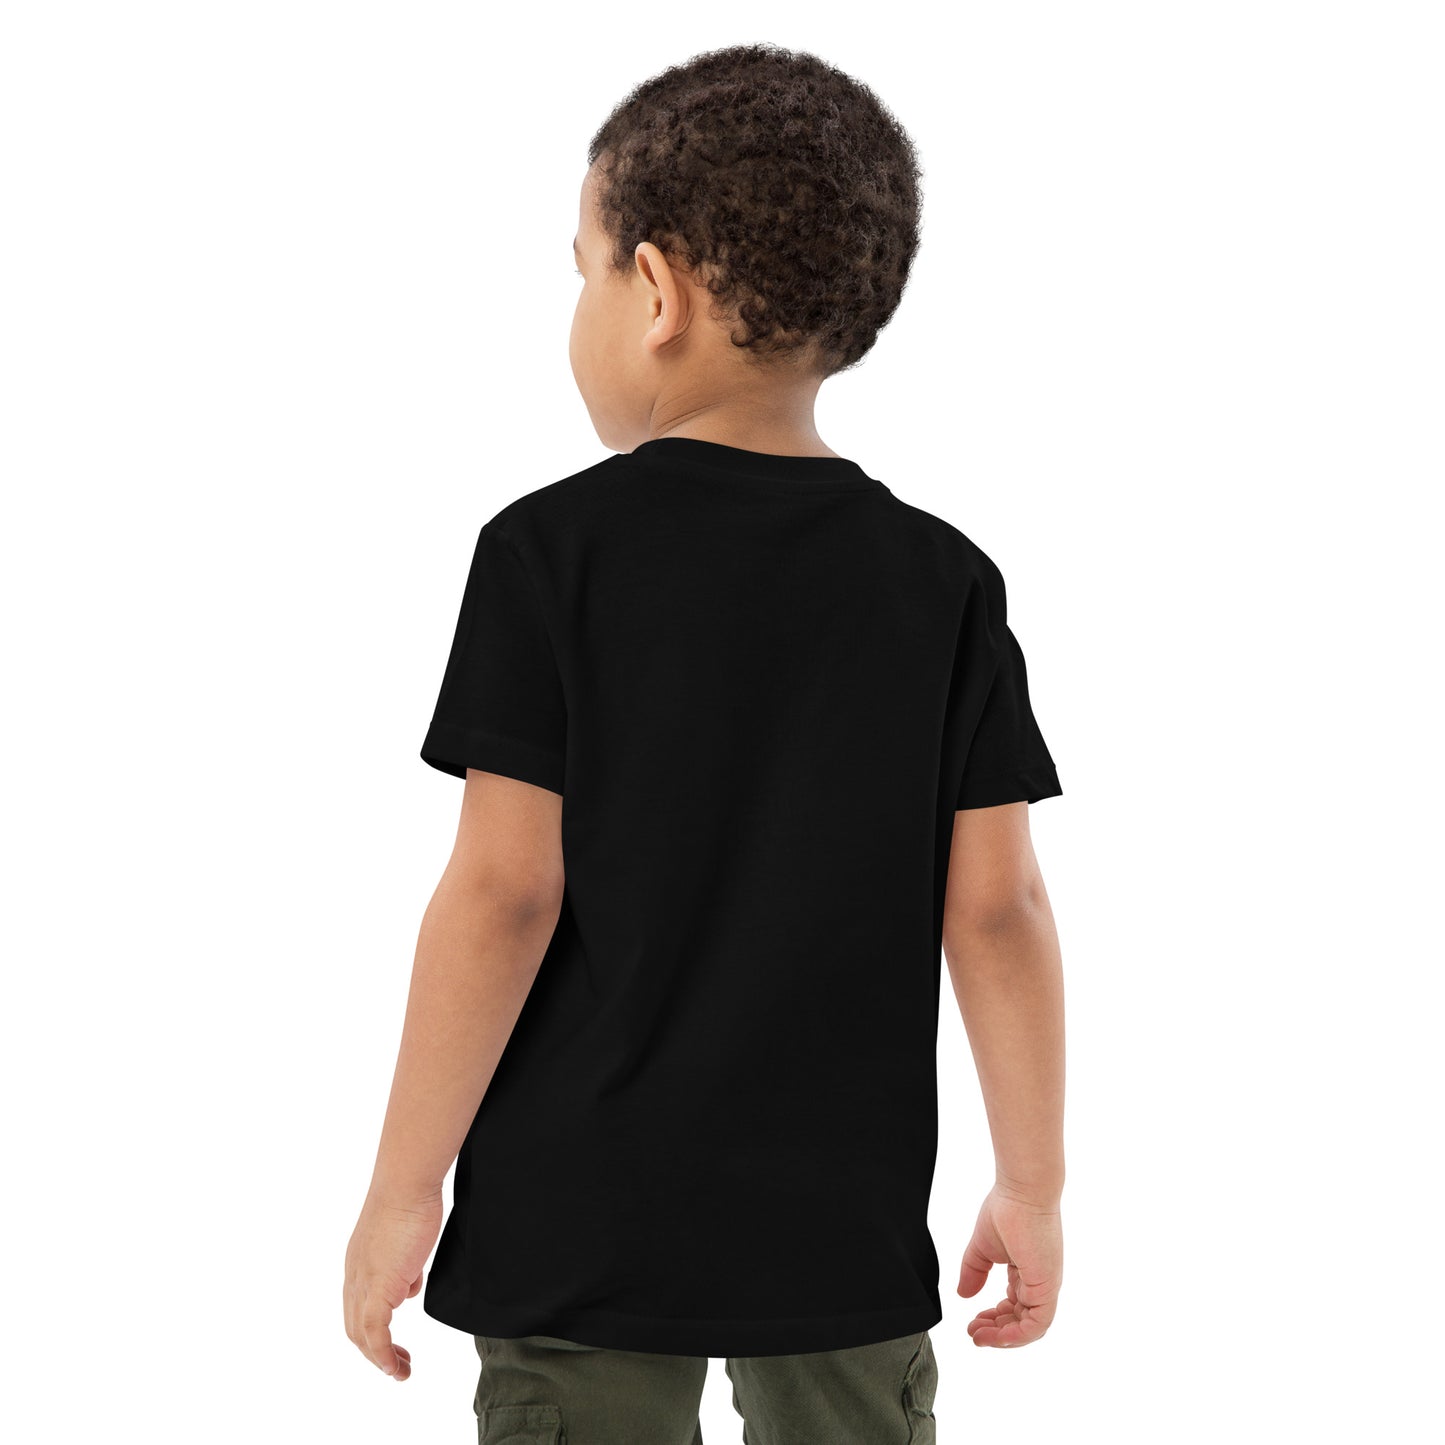 Baksida av barn T-shirt i färgen svart. Ekologisk bomull och tryck med axolotlen Axis i bottenmiljö.